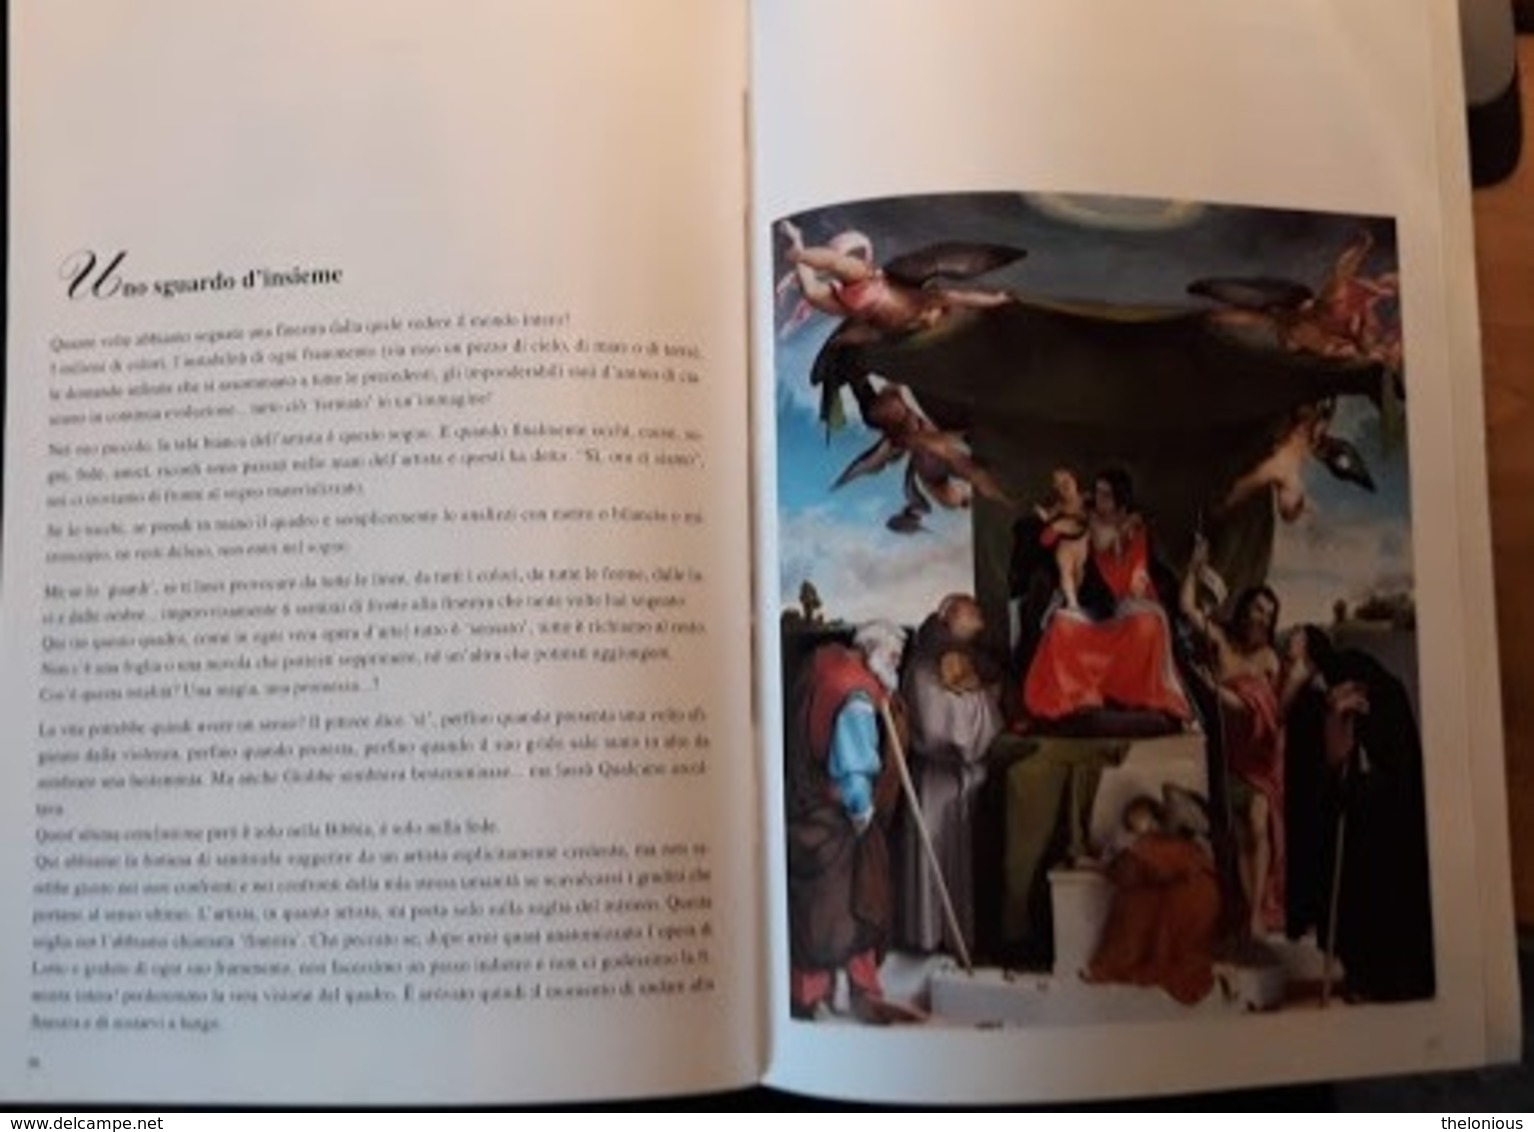 # Conoscere Lorenzo Lotto attraverso La Pala di San Bernardino in Bergamo